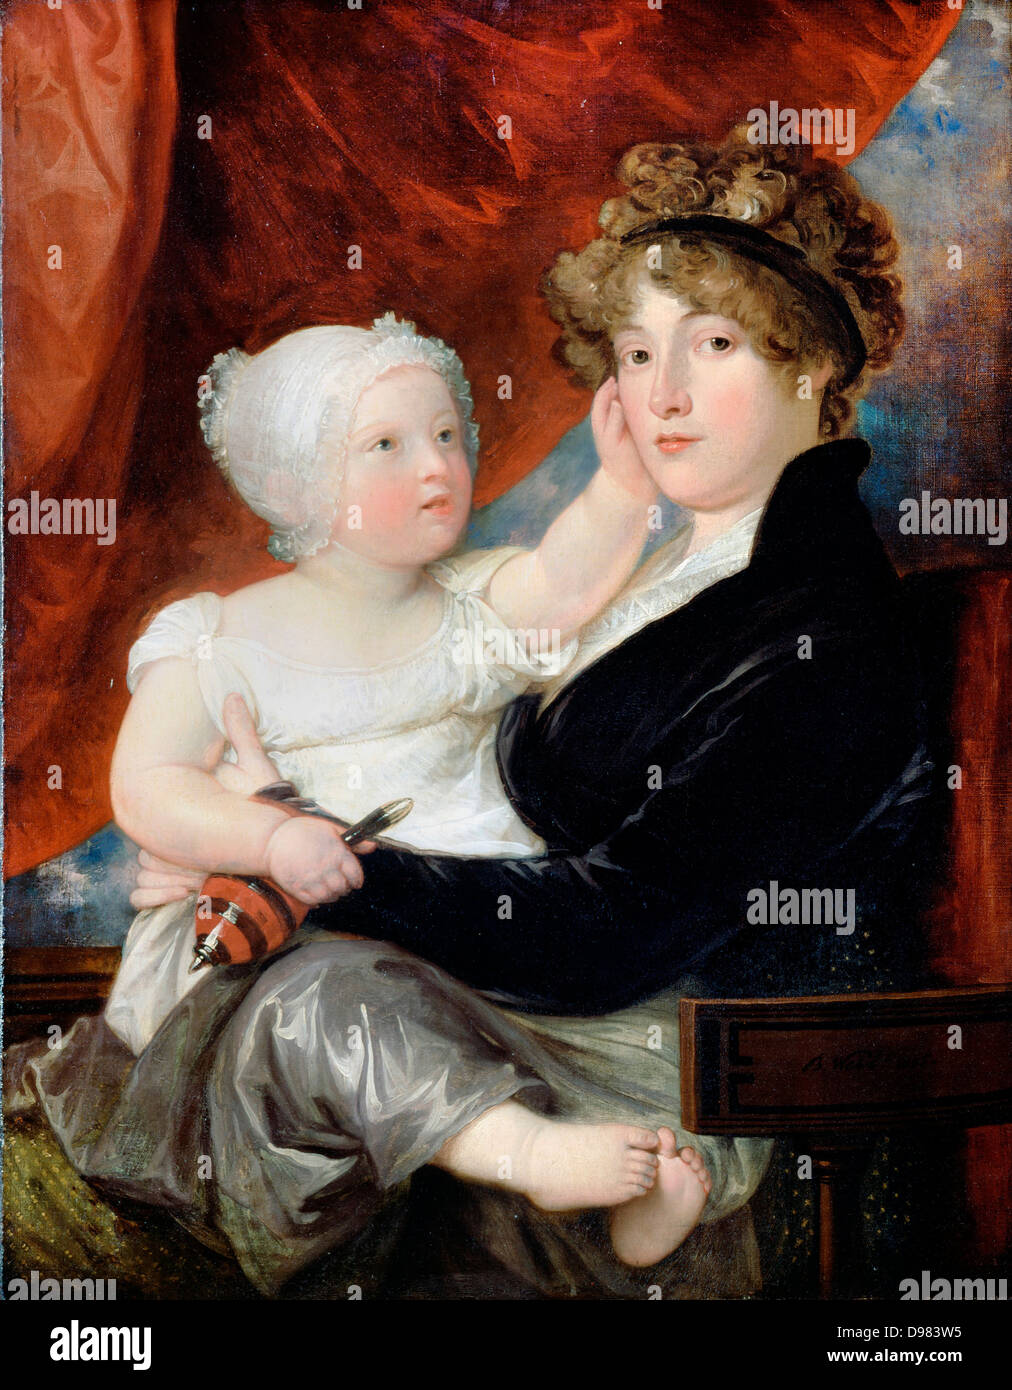 Benjamin West, Mme Benjamin West II avec son fils Benjamin West III 1805 Huile sur toile. Dulwich Picture Gallery, Londres. Banque D'Images